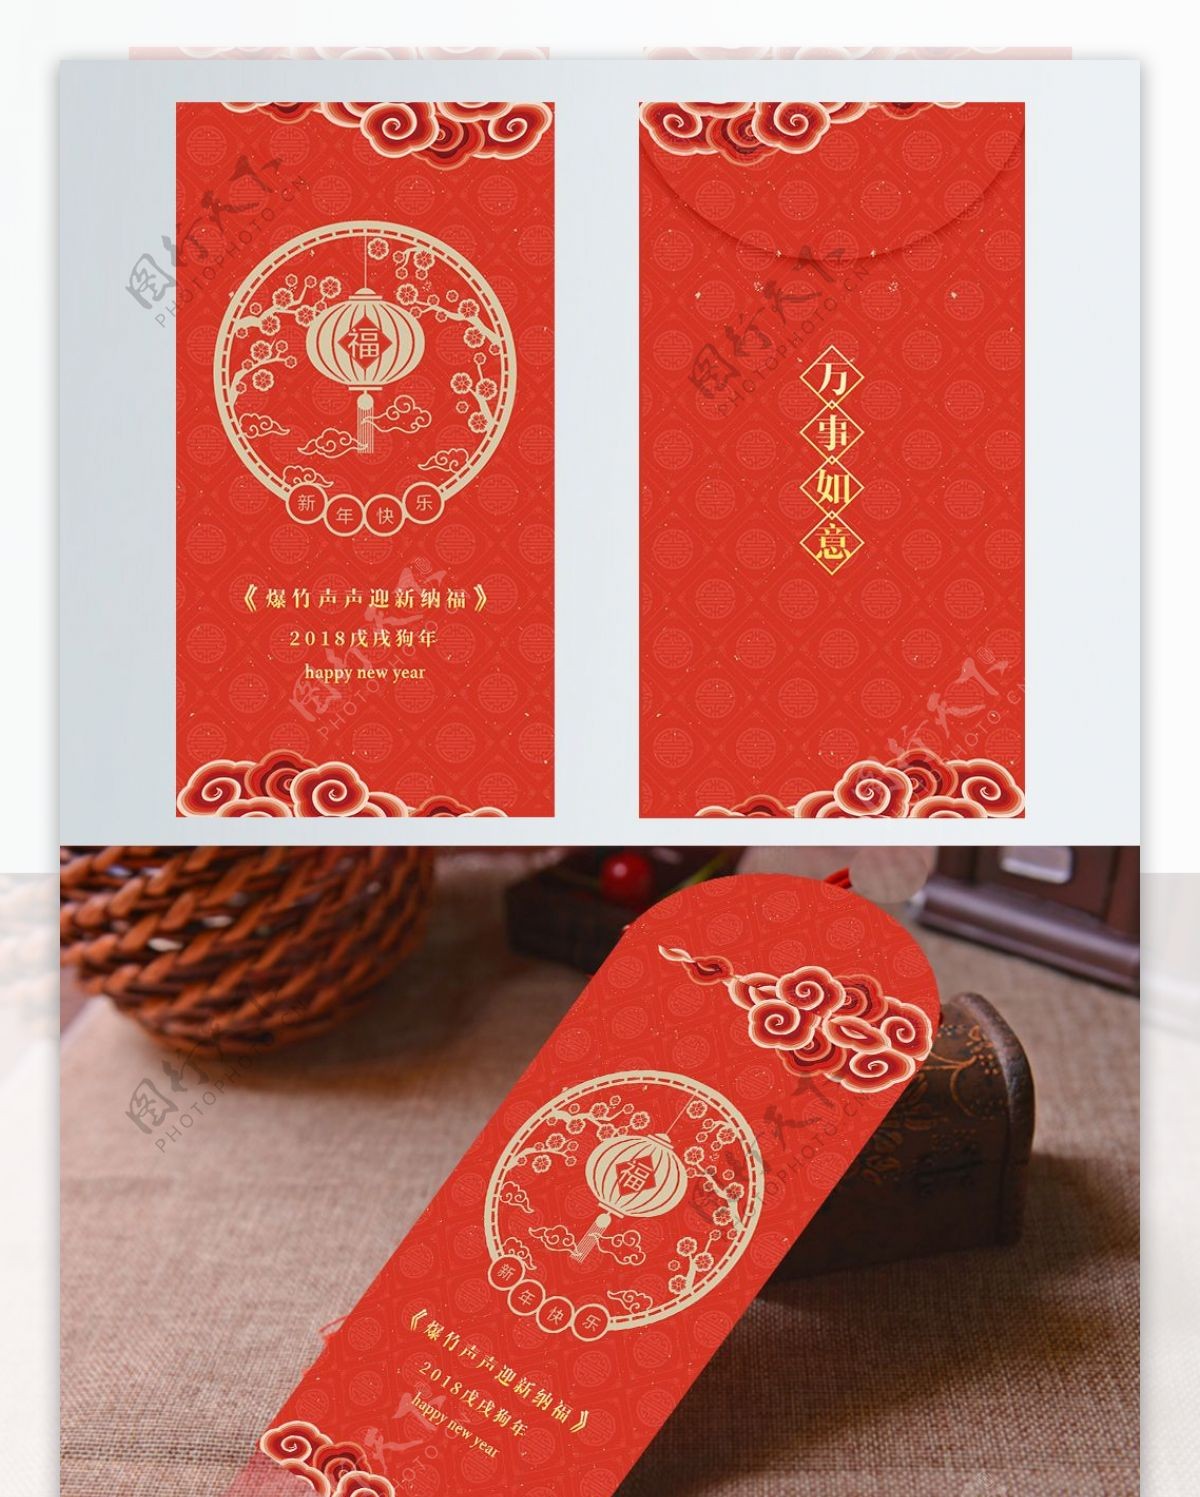 喜庆红色中式洒金祥云福字新年红包商业包装